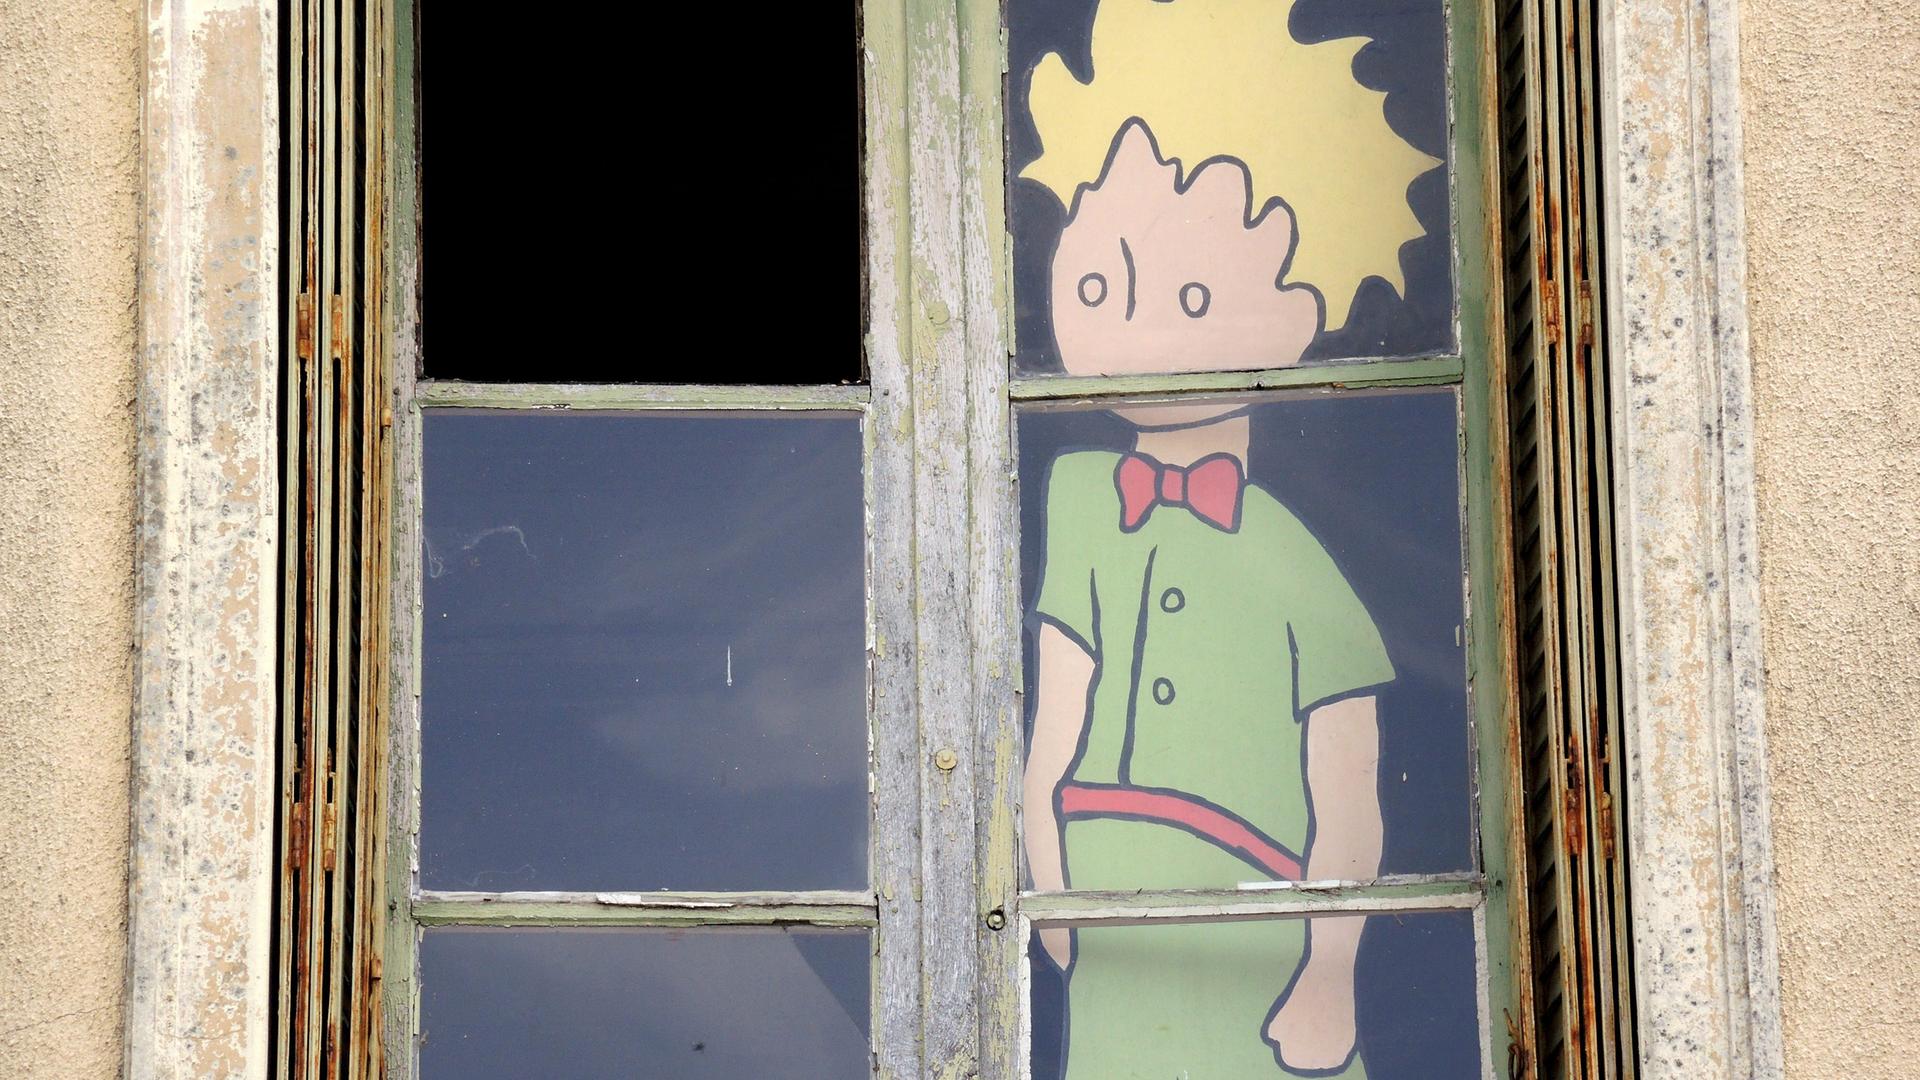 Die Figur des "Kleinen Prinzen" mit gelben Haaren und grüner Kleidung blickt hinter einem Fenster nach draußen.